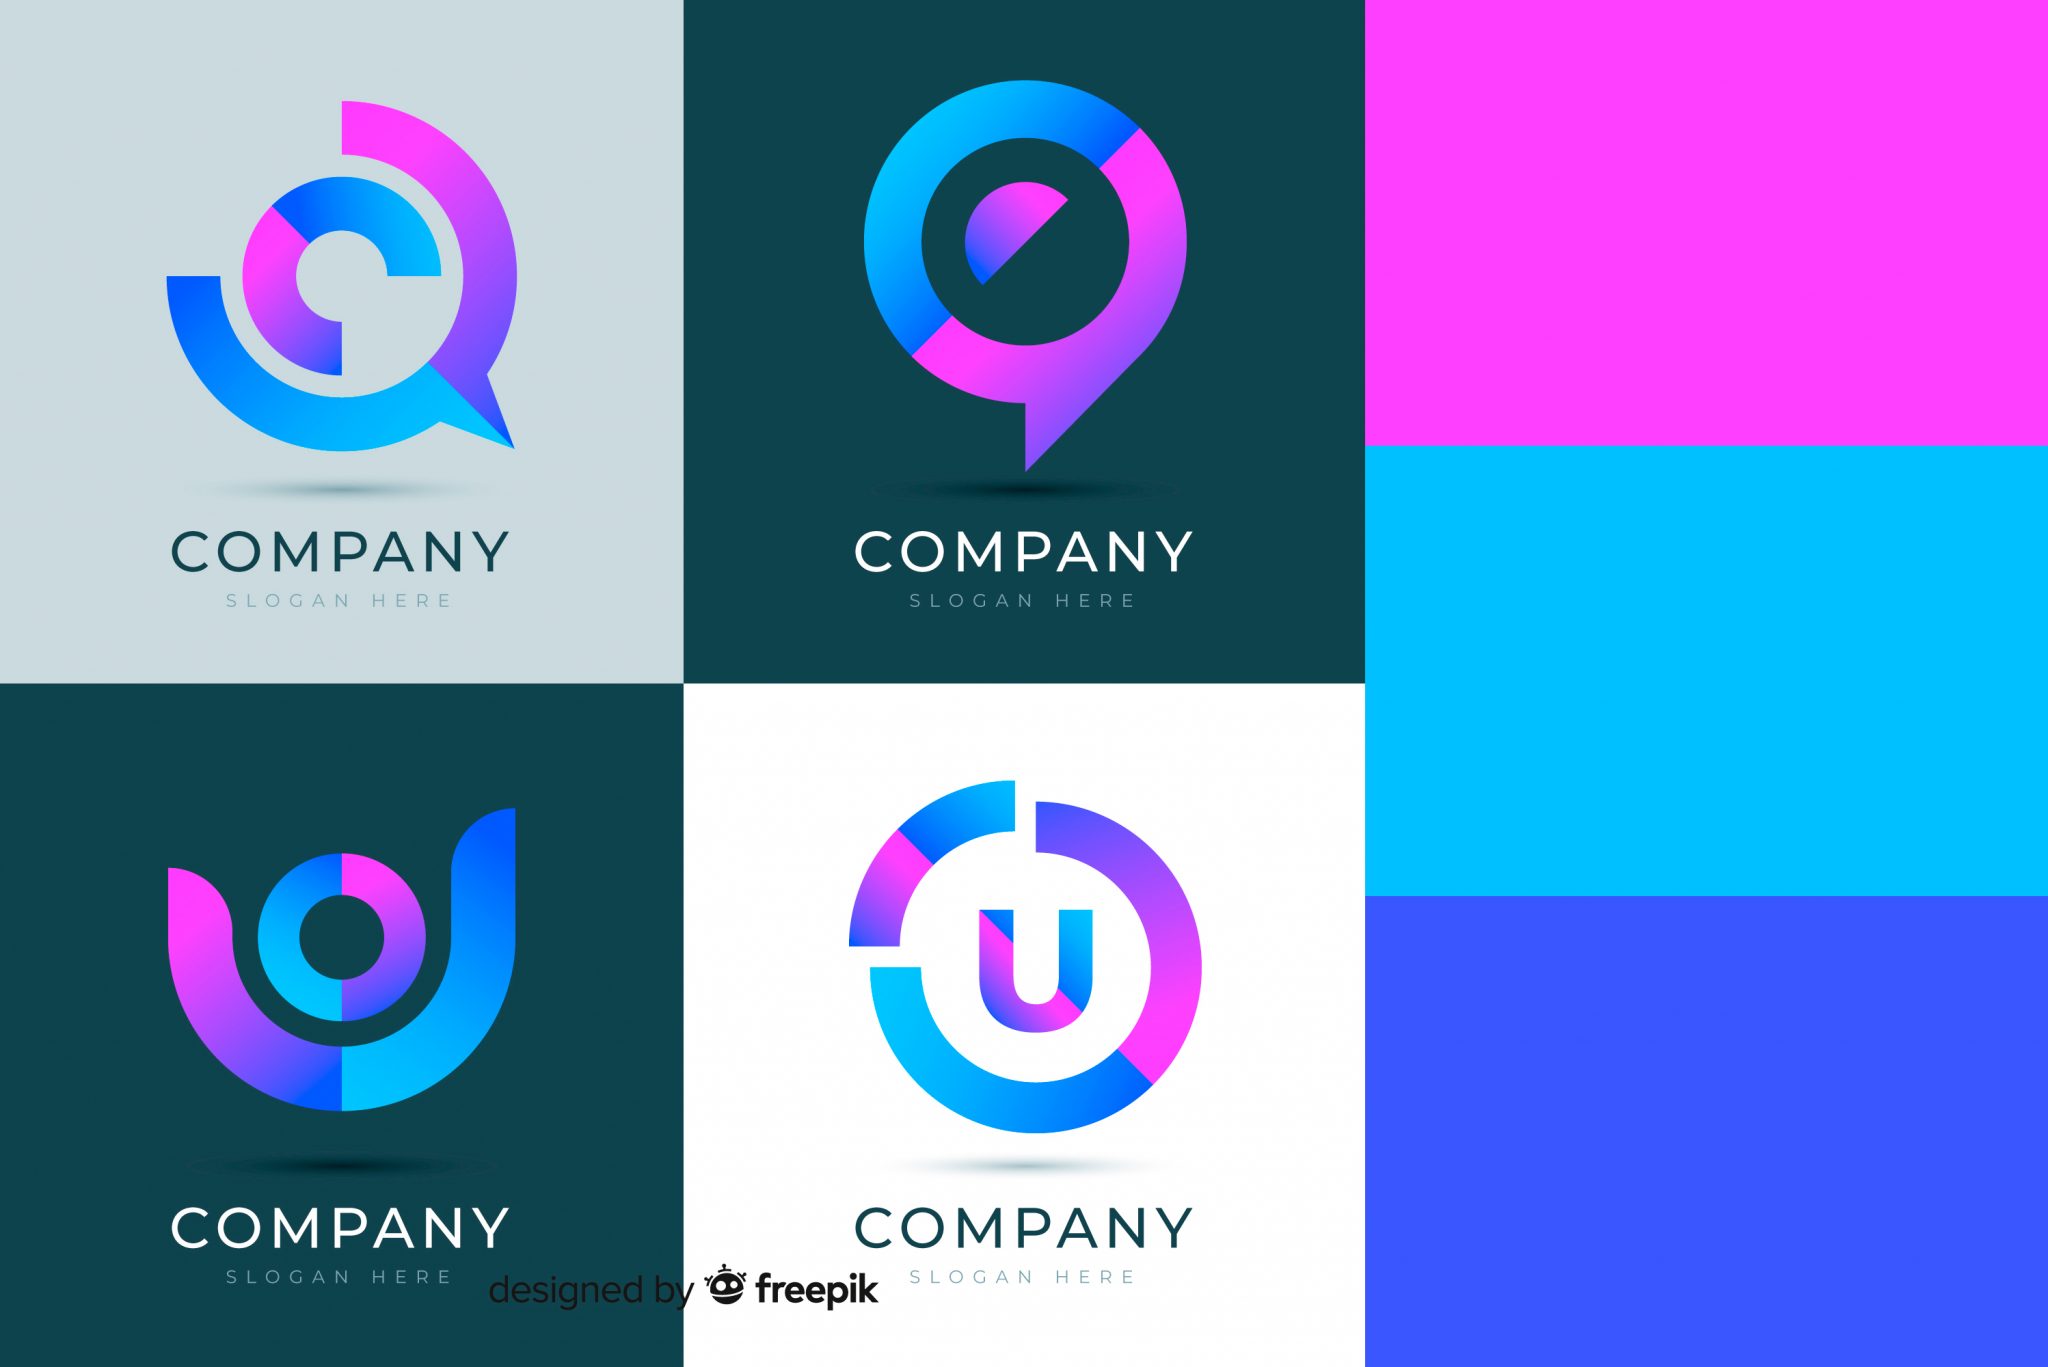 Brandcolors La Paleta De Colores Que Necesitas Para Disenar Tu Logo Images